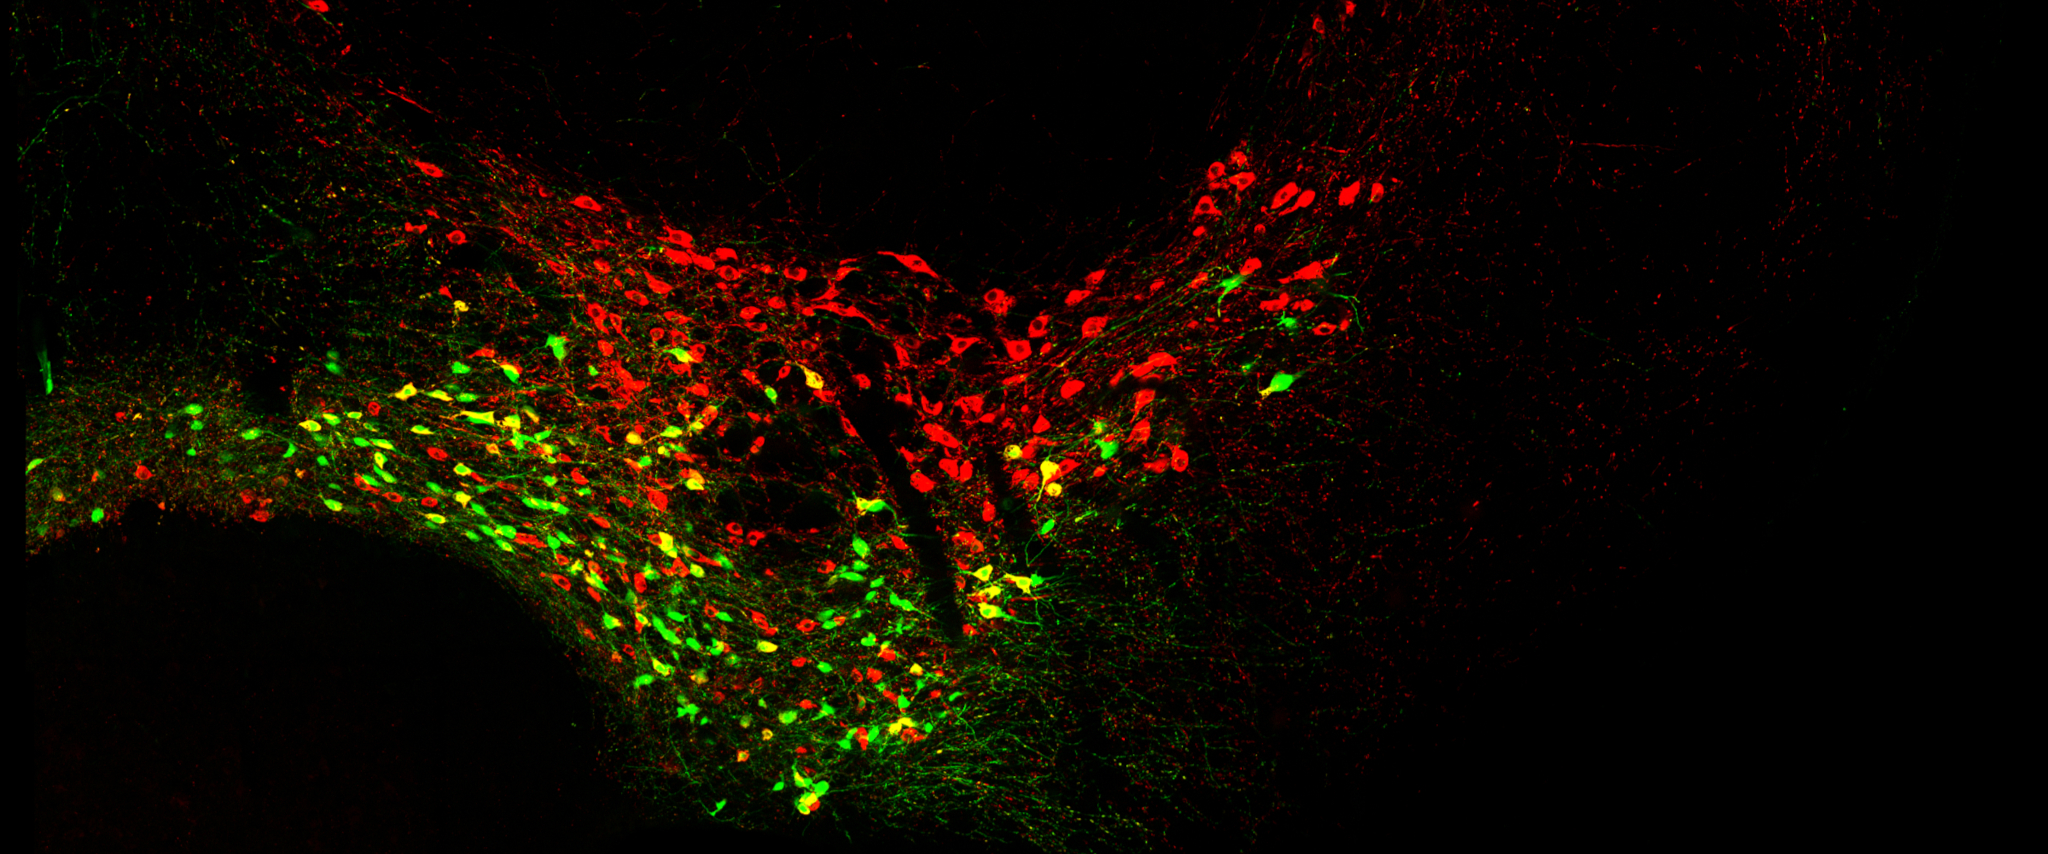 Früh geborenen Nervenzellen stehen viele Wege offen